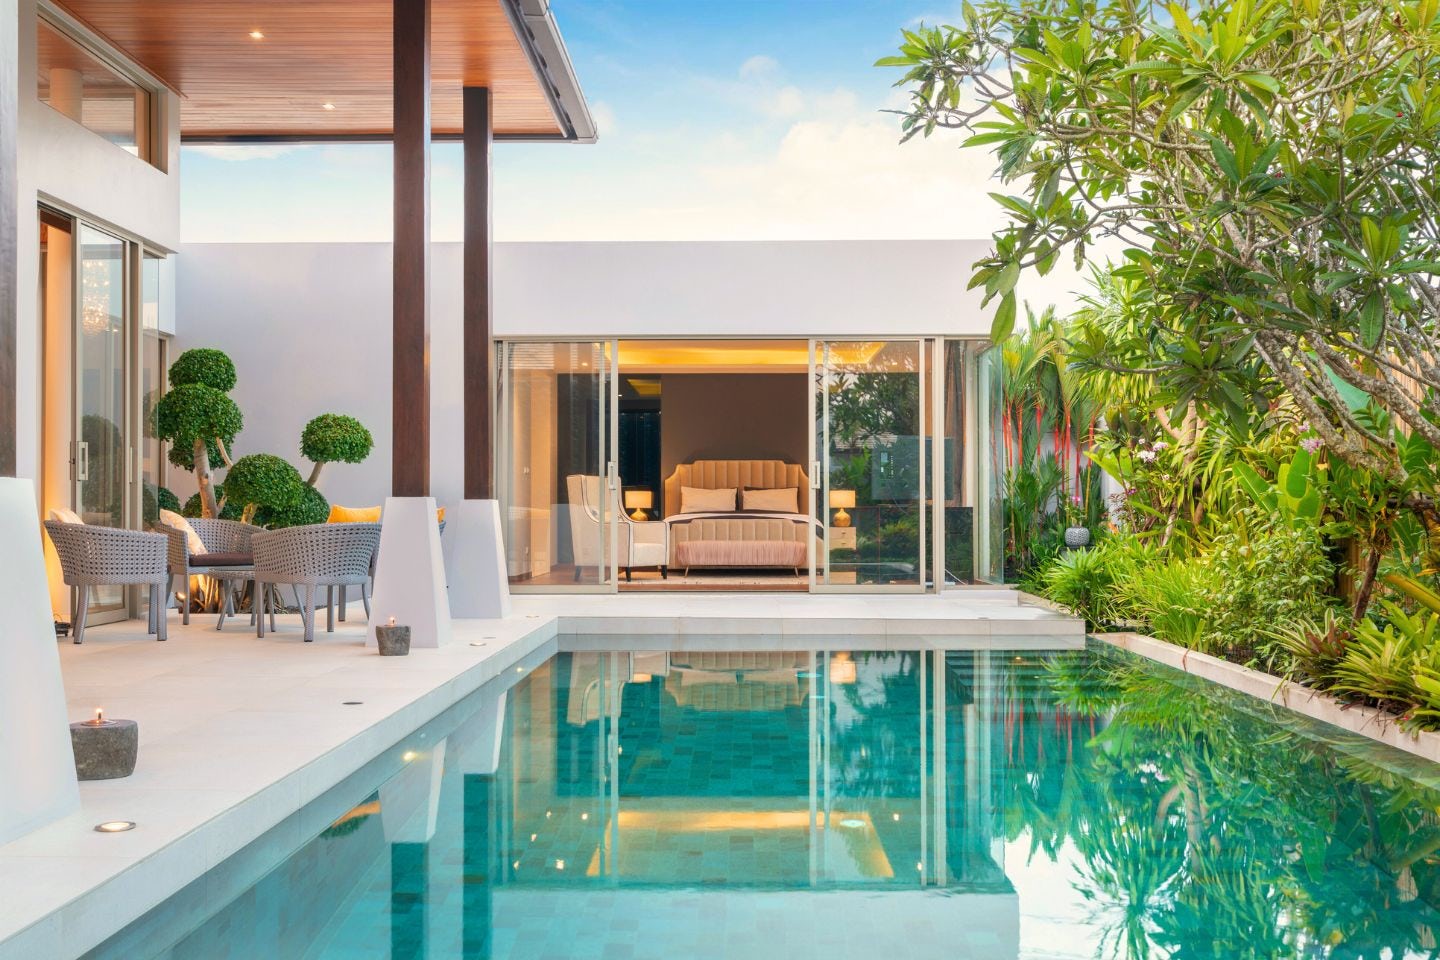 Une piscine à l'eau limpide de face, qui se prolonge sur une chambre parentale avec baie vitrée. Sur la gauche, terrasse avec table et chaises en rotin, à droite, végétation tropicale.